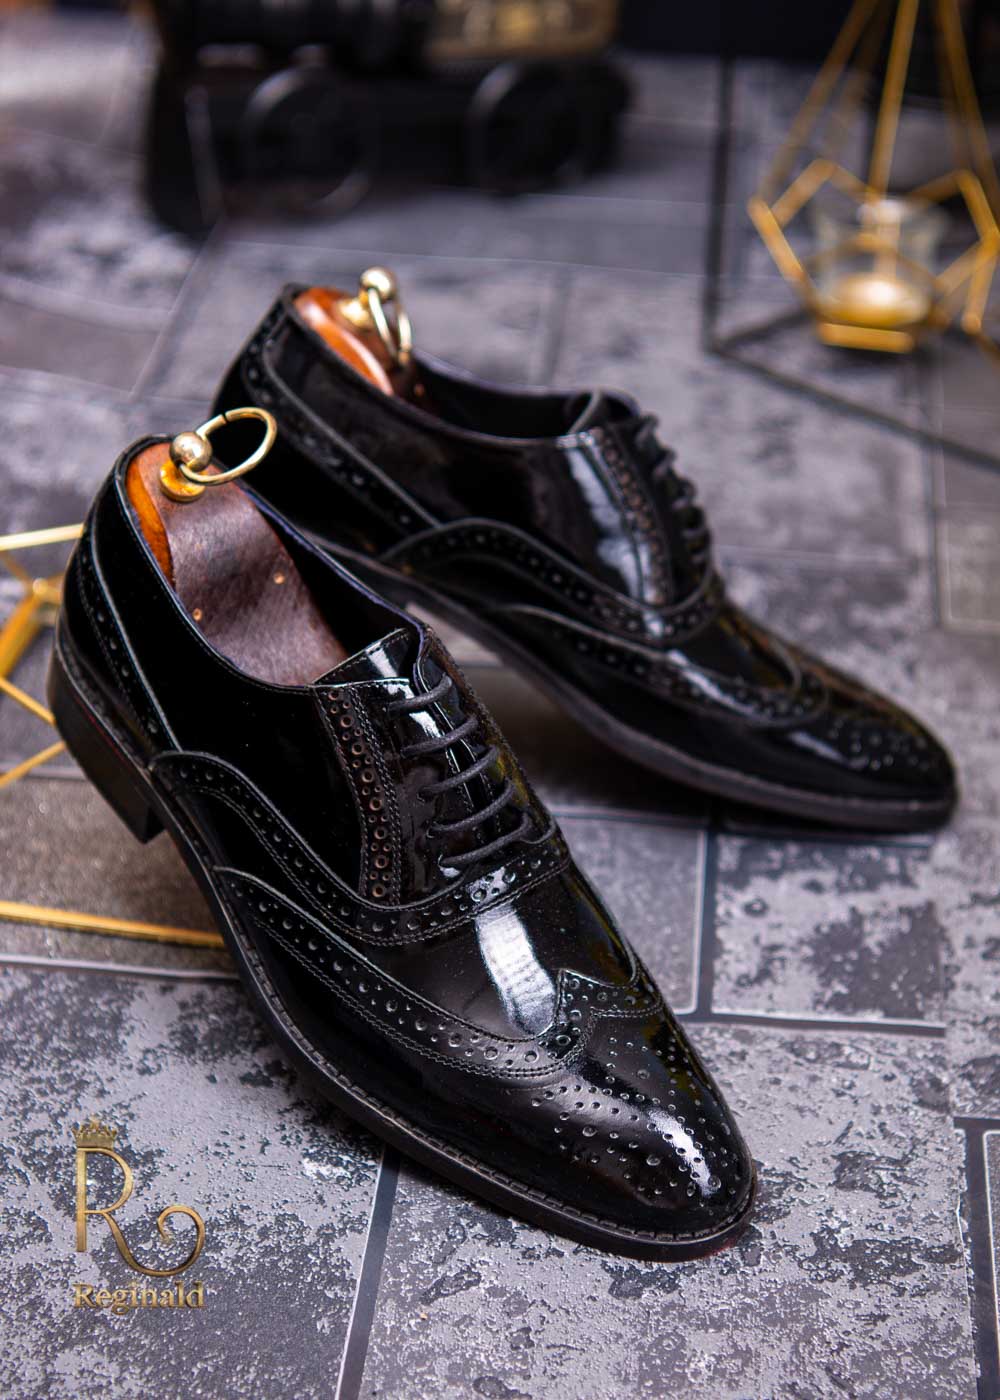 Pantofi eleganti de barbati din piele naturala, negru lacuit, model brogue – P1350 – Reginald.ro – Cel mai mare magazin de barbatesti